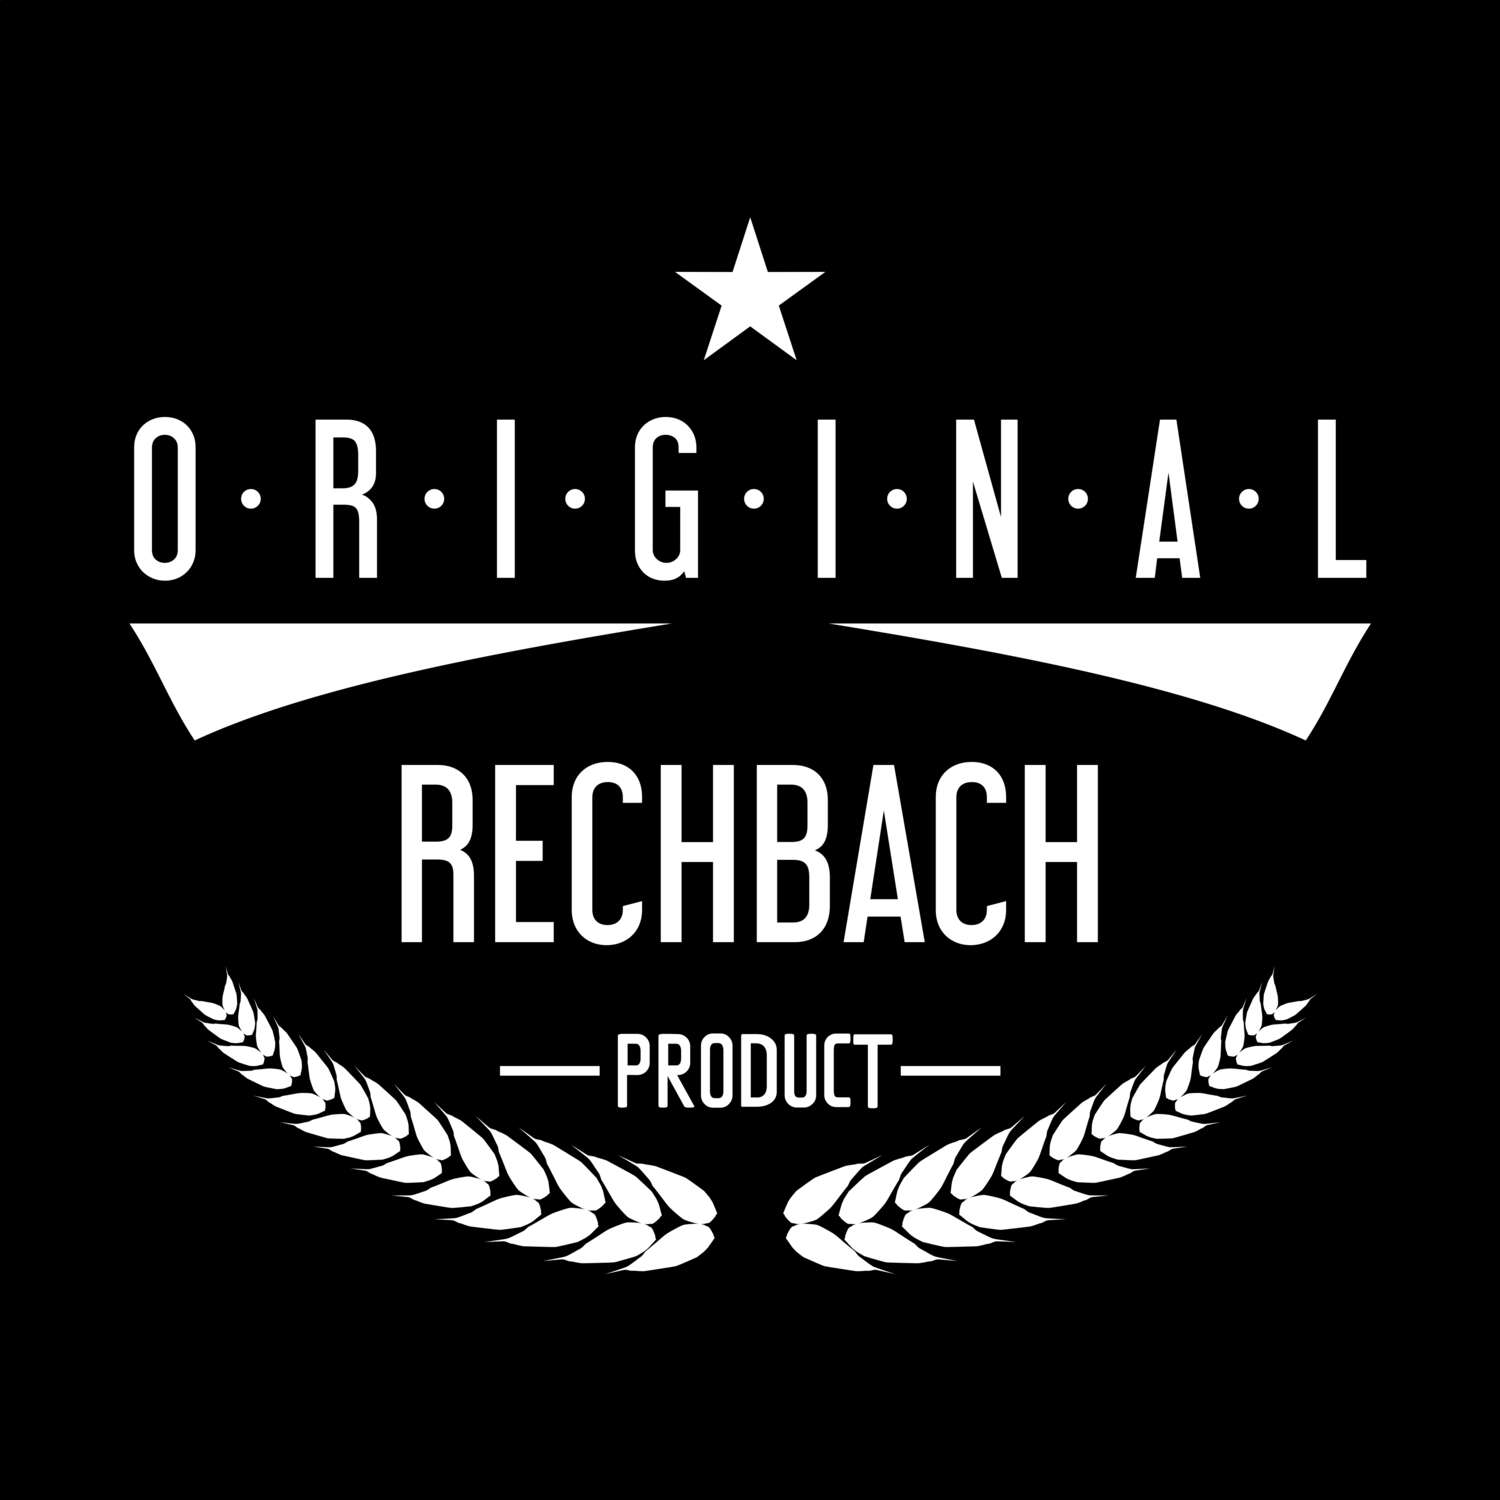 Rechbach T-Shirt »Original Product«